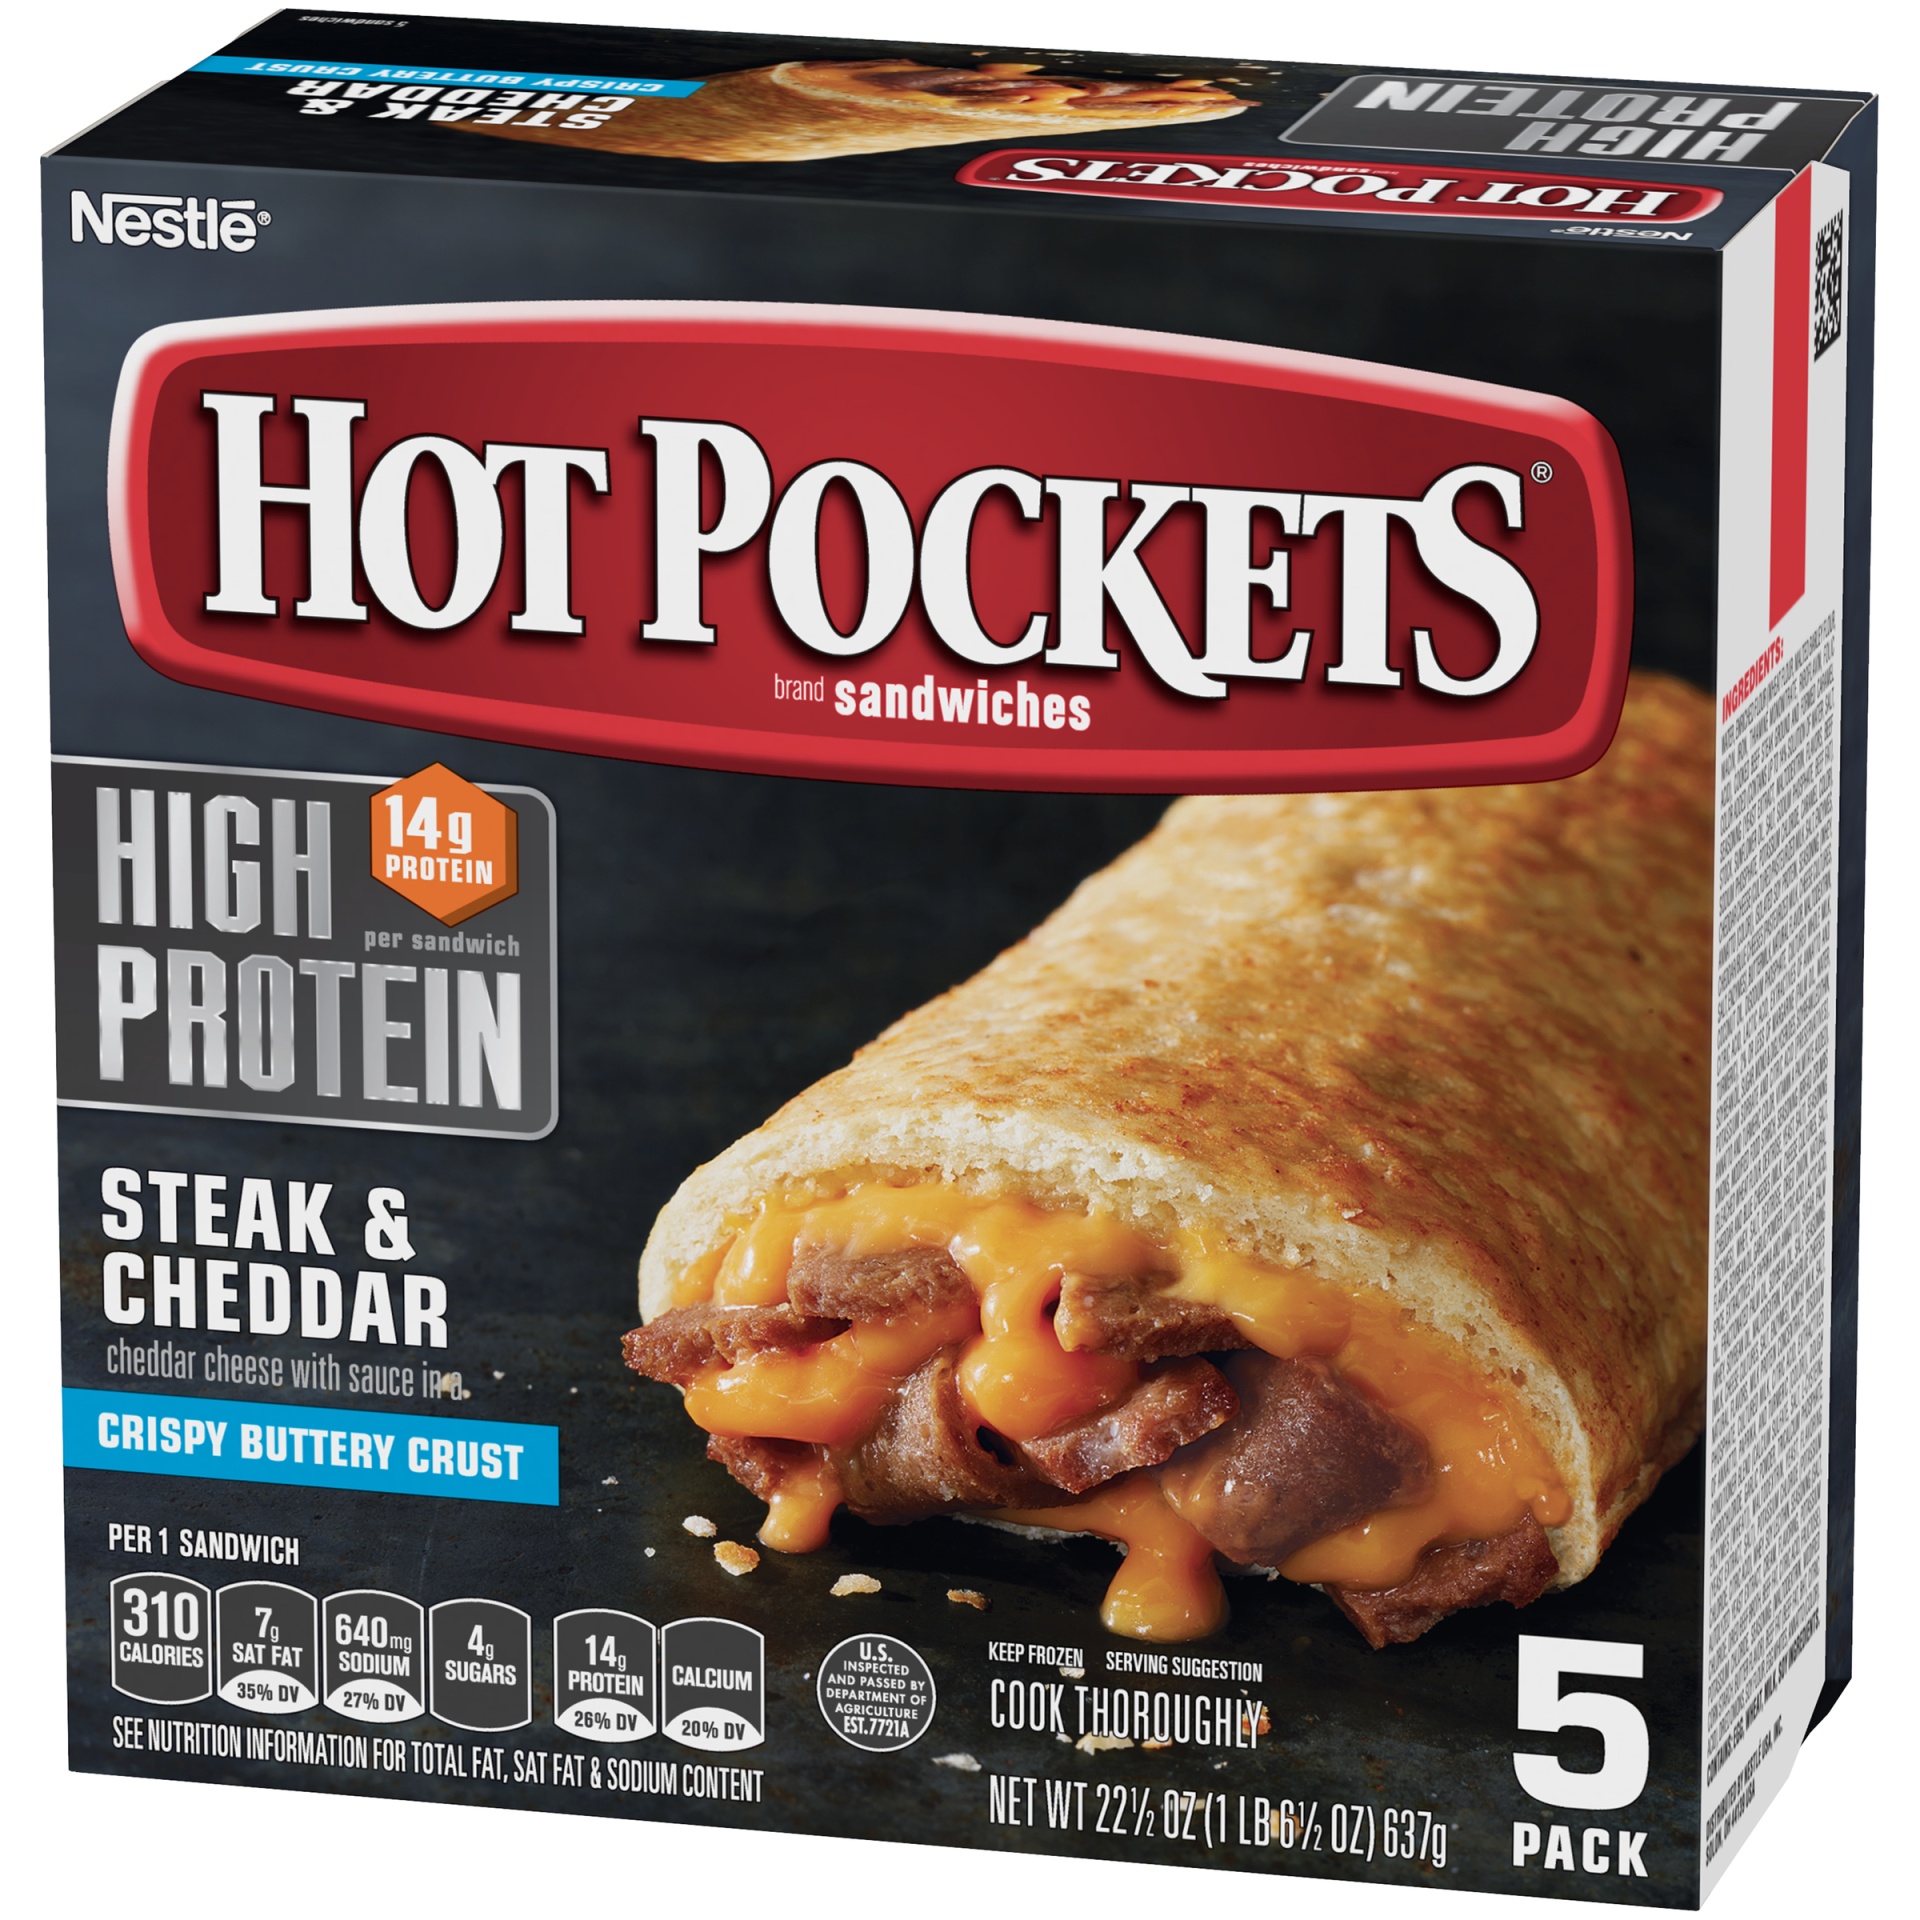 slide 4 of 8, Hot Pockets High Protein Steak & Cheddar Frozen Sandwiches, 5 ct; 4.5 oz